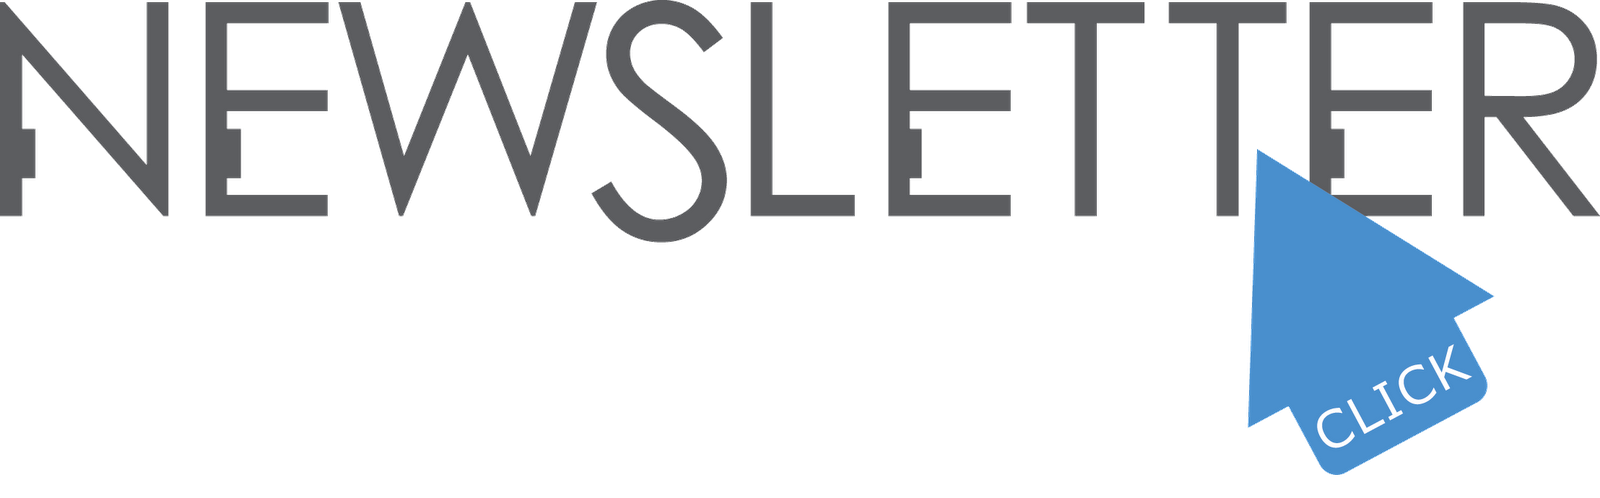 newsletter clipart logo